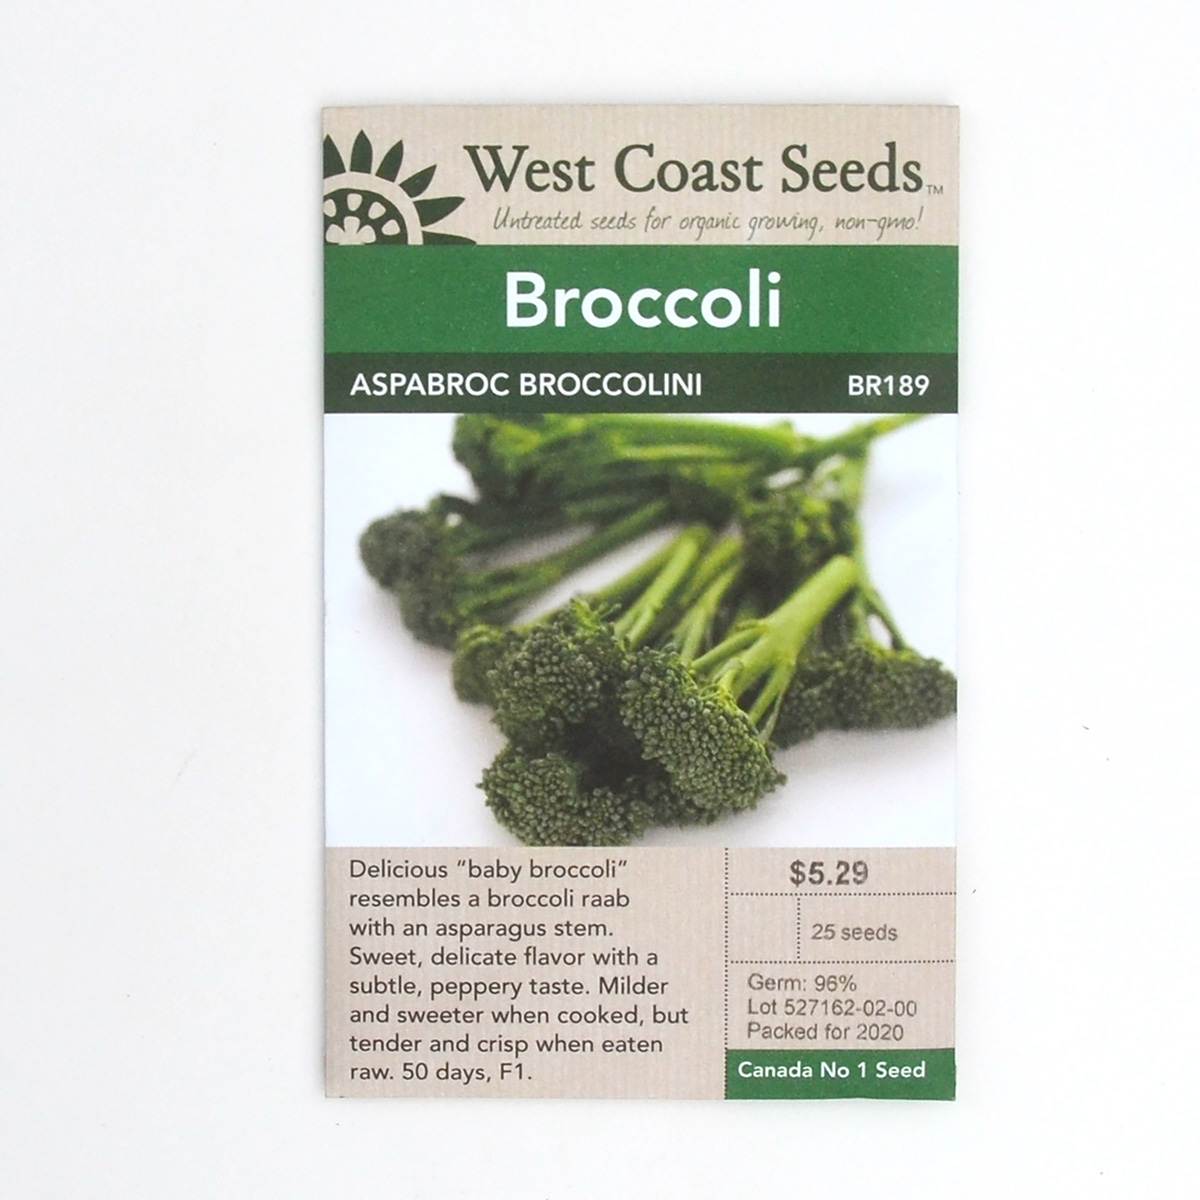 Broccoli Aspabroc Broccolini Seeds BR189